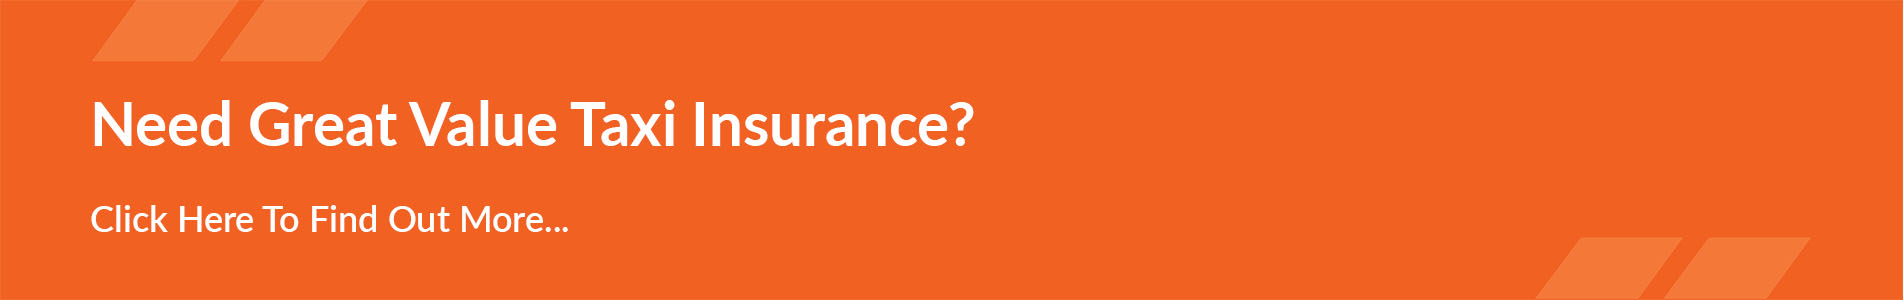 Insurance Banner